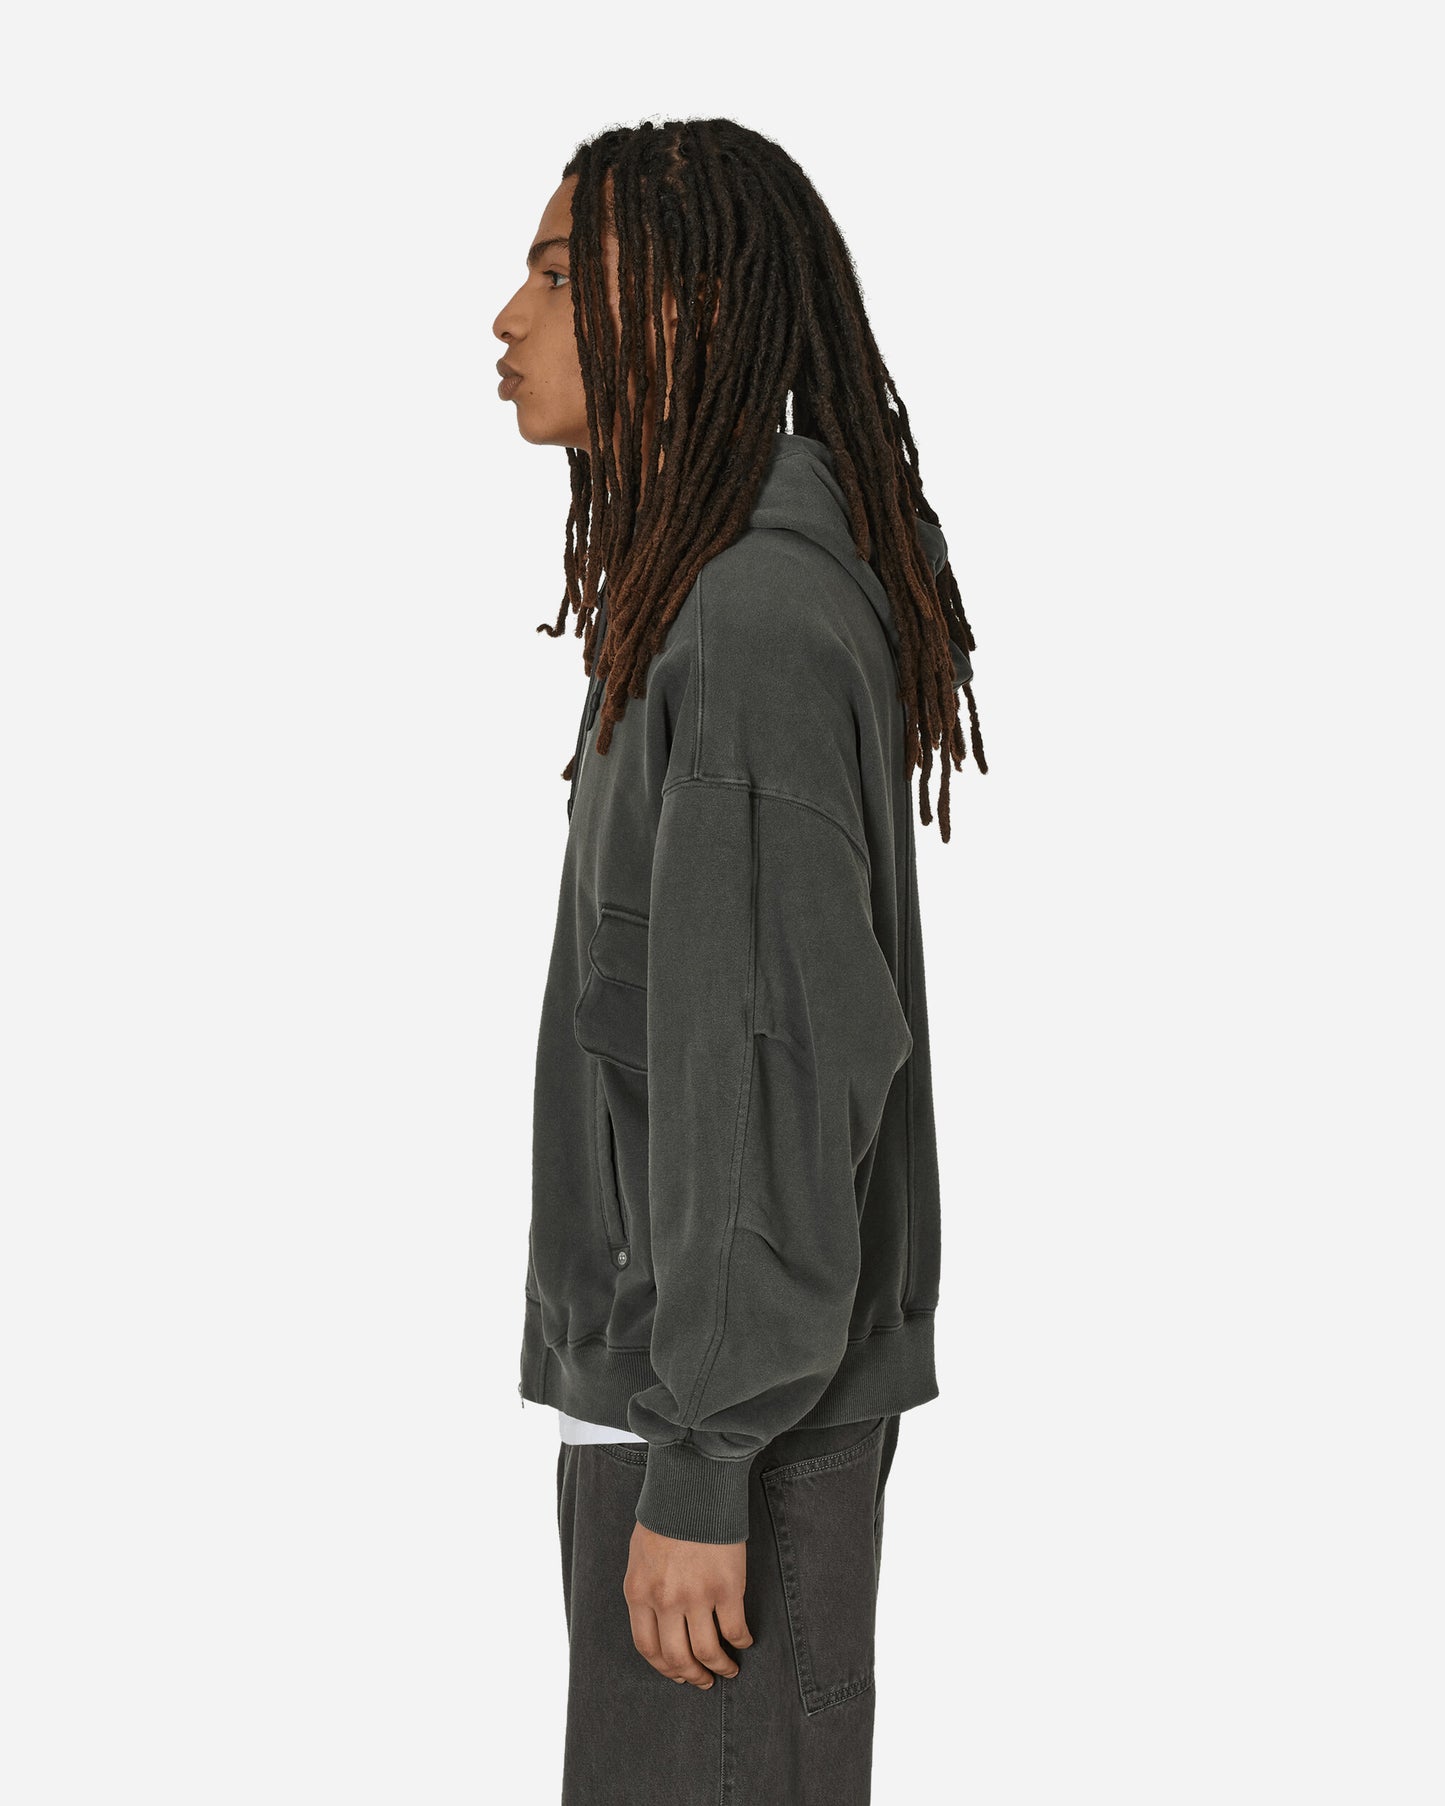 Unaffected Over Dyed 4P Hoodie Zip Up Charcoal Sweatshirts Zip-Ups UN24SSLSS07 CHARCOAL